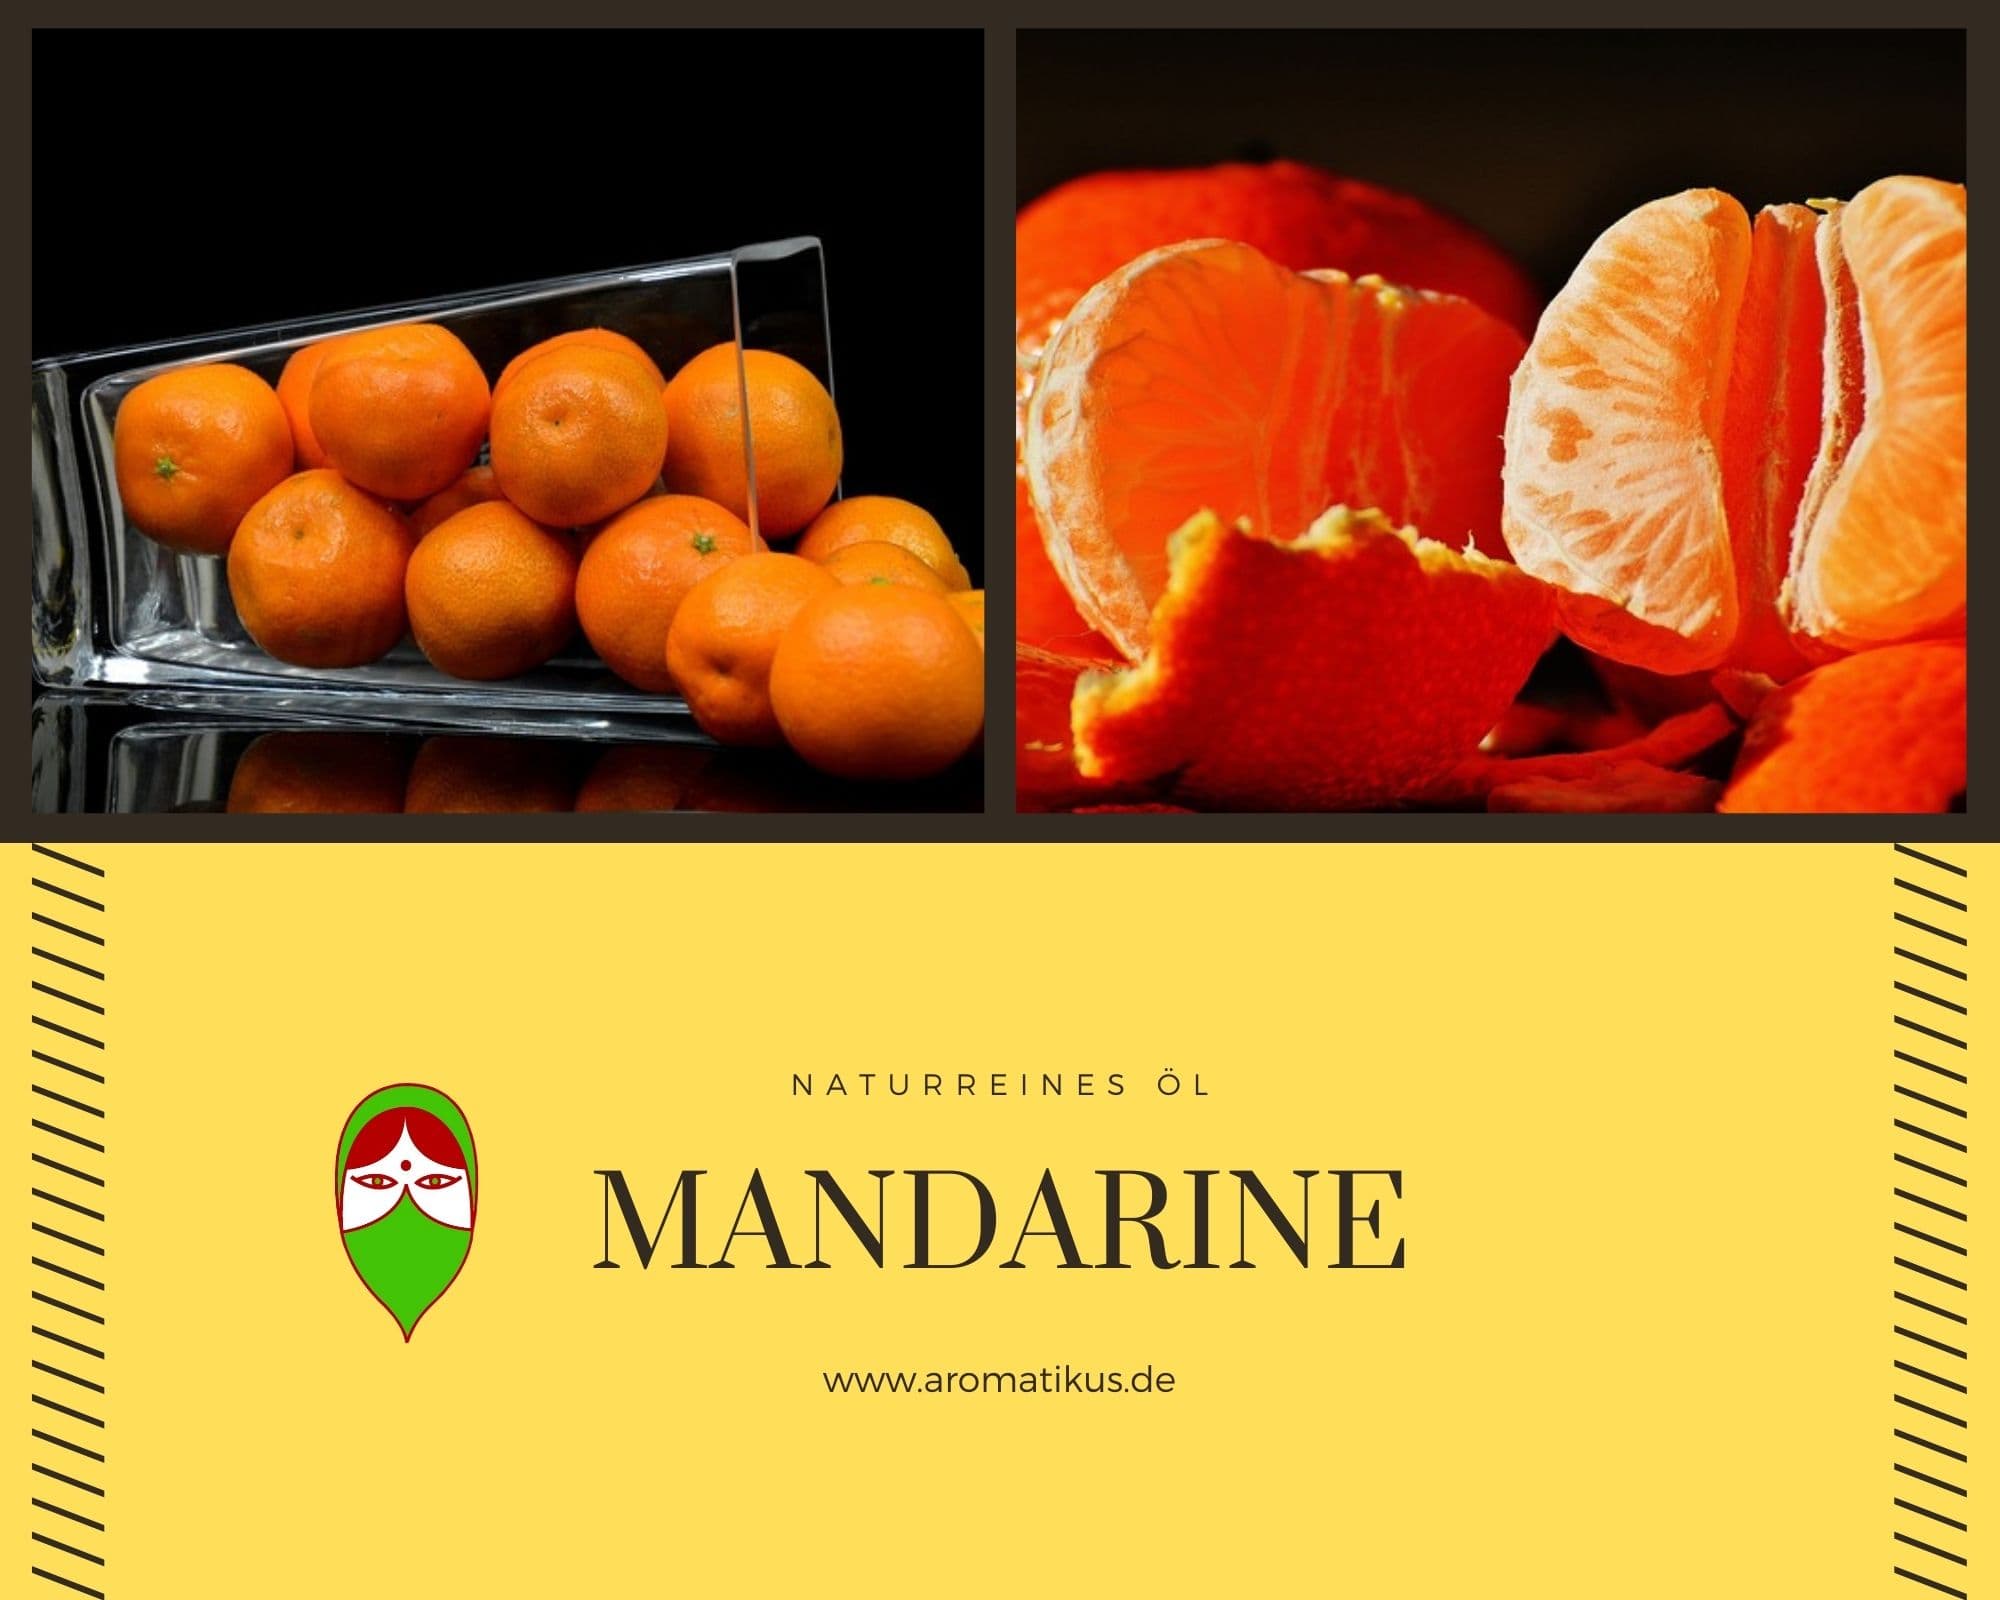 Ätherisches Duftöl Mandarine als naturreines Öl von Aromatikus